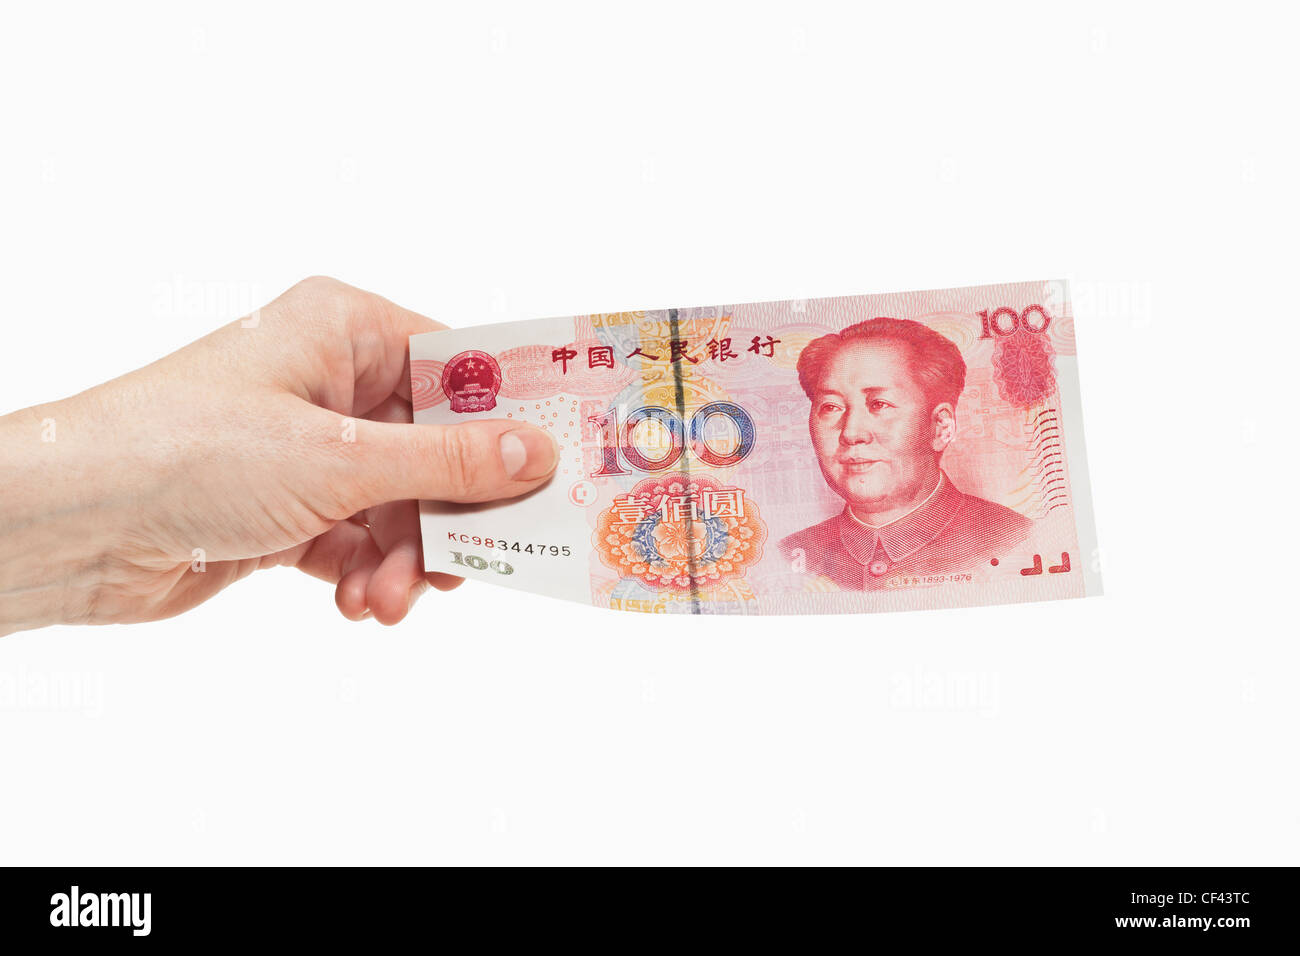 Uno cinese 100 Yuan bill con il ritratto di Mao Zedong è tenuto in mano, sfondo bianco. Foto Stock